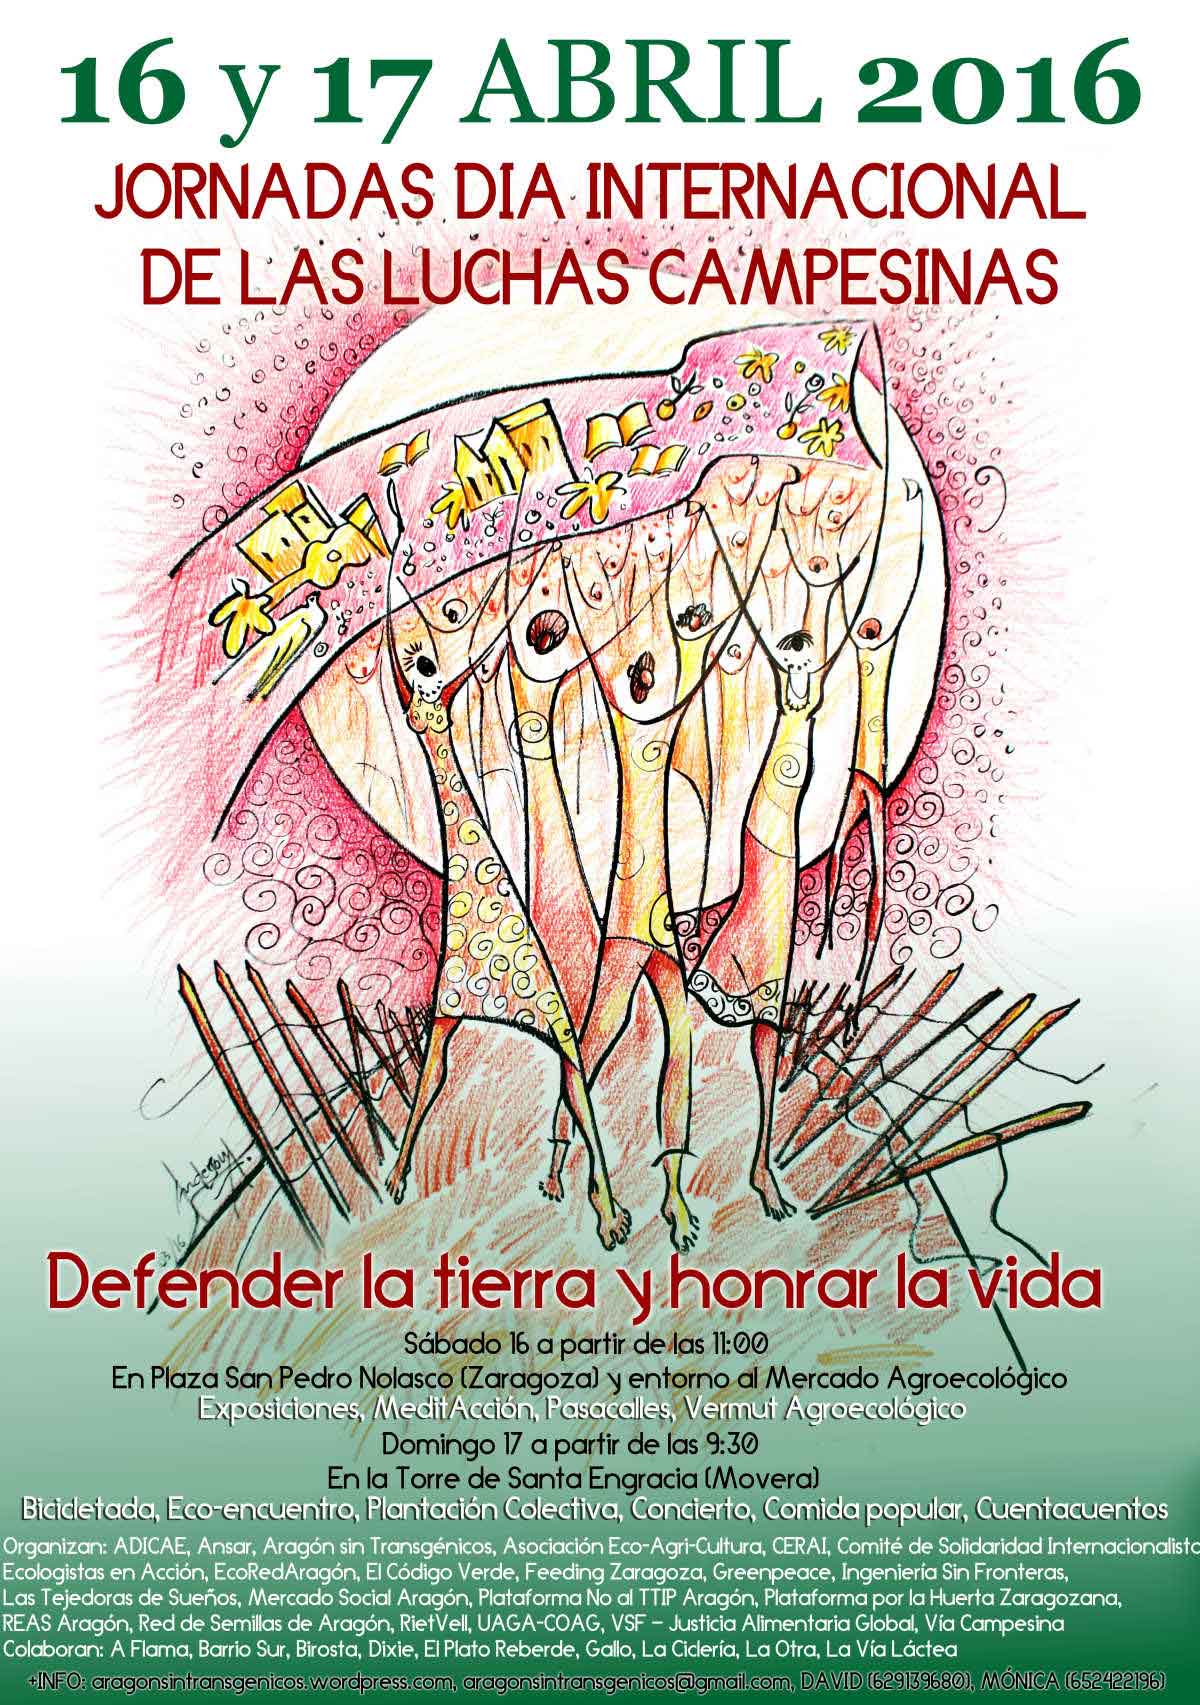 Jornadas de la Lucha Campesina en Aragón